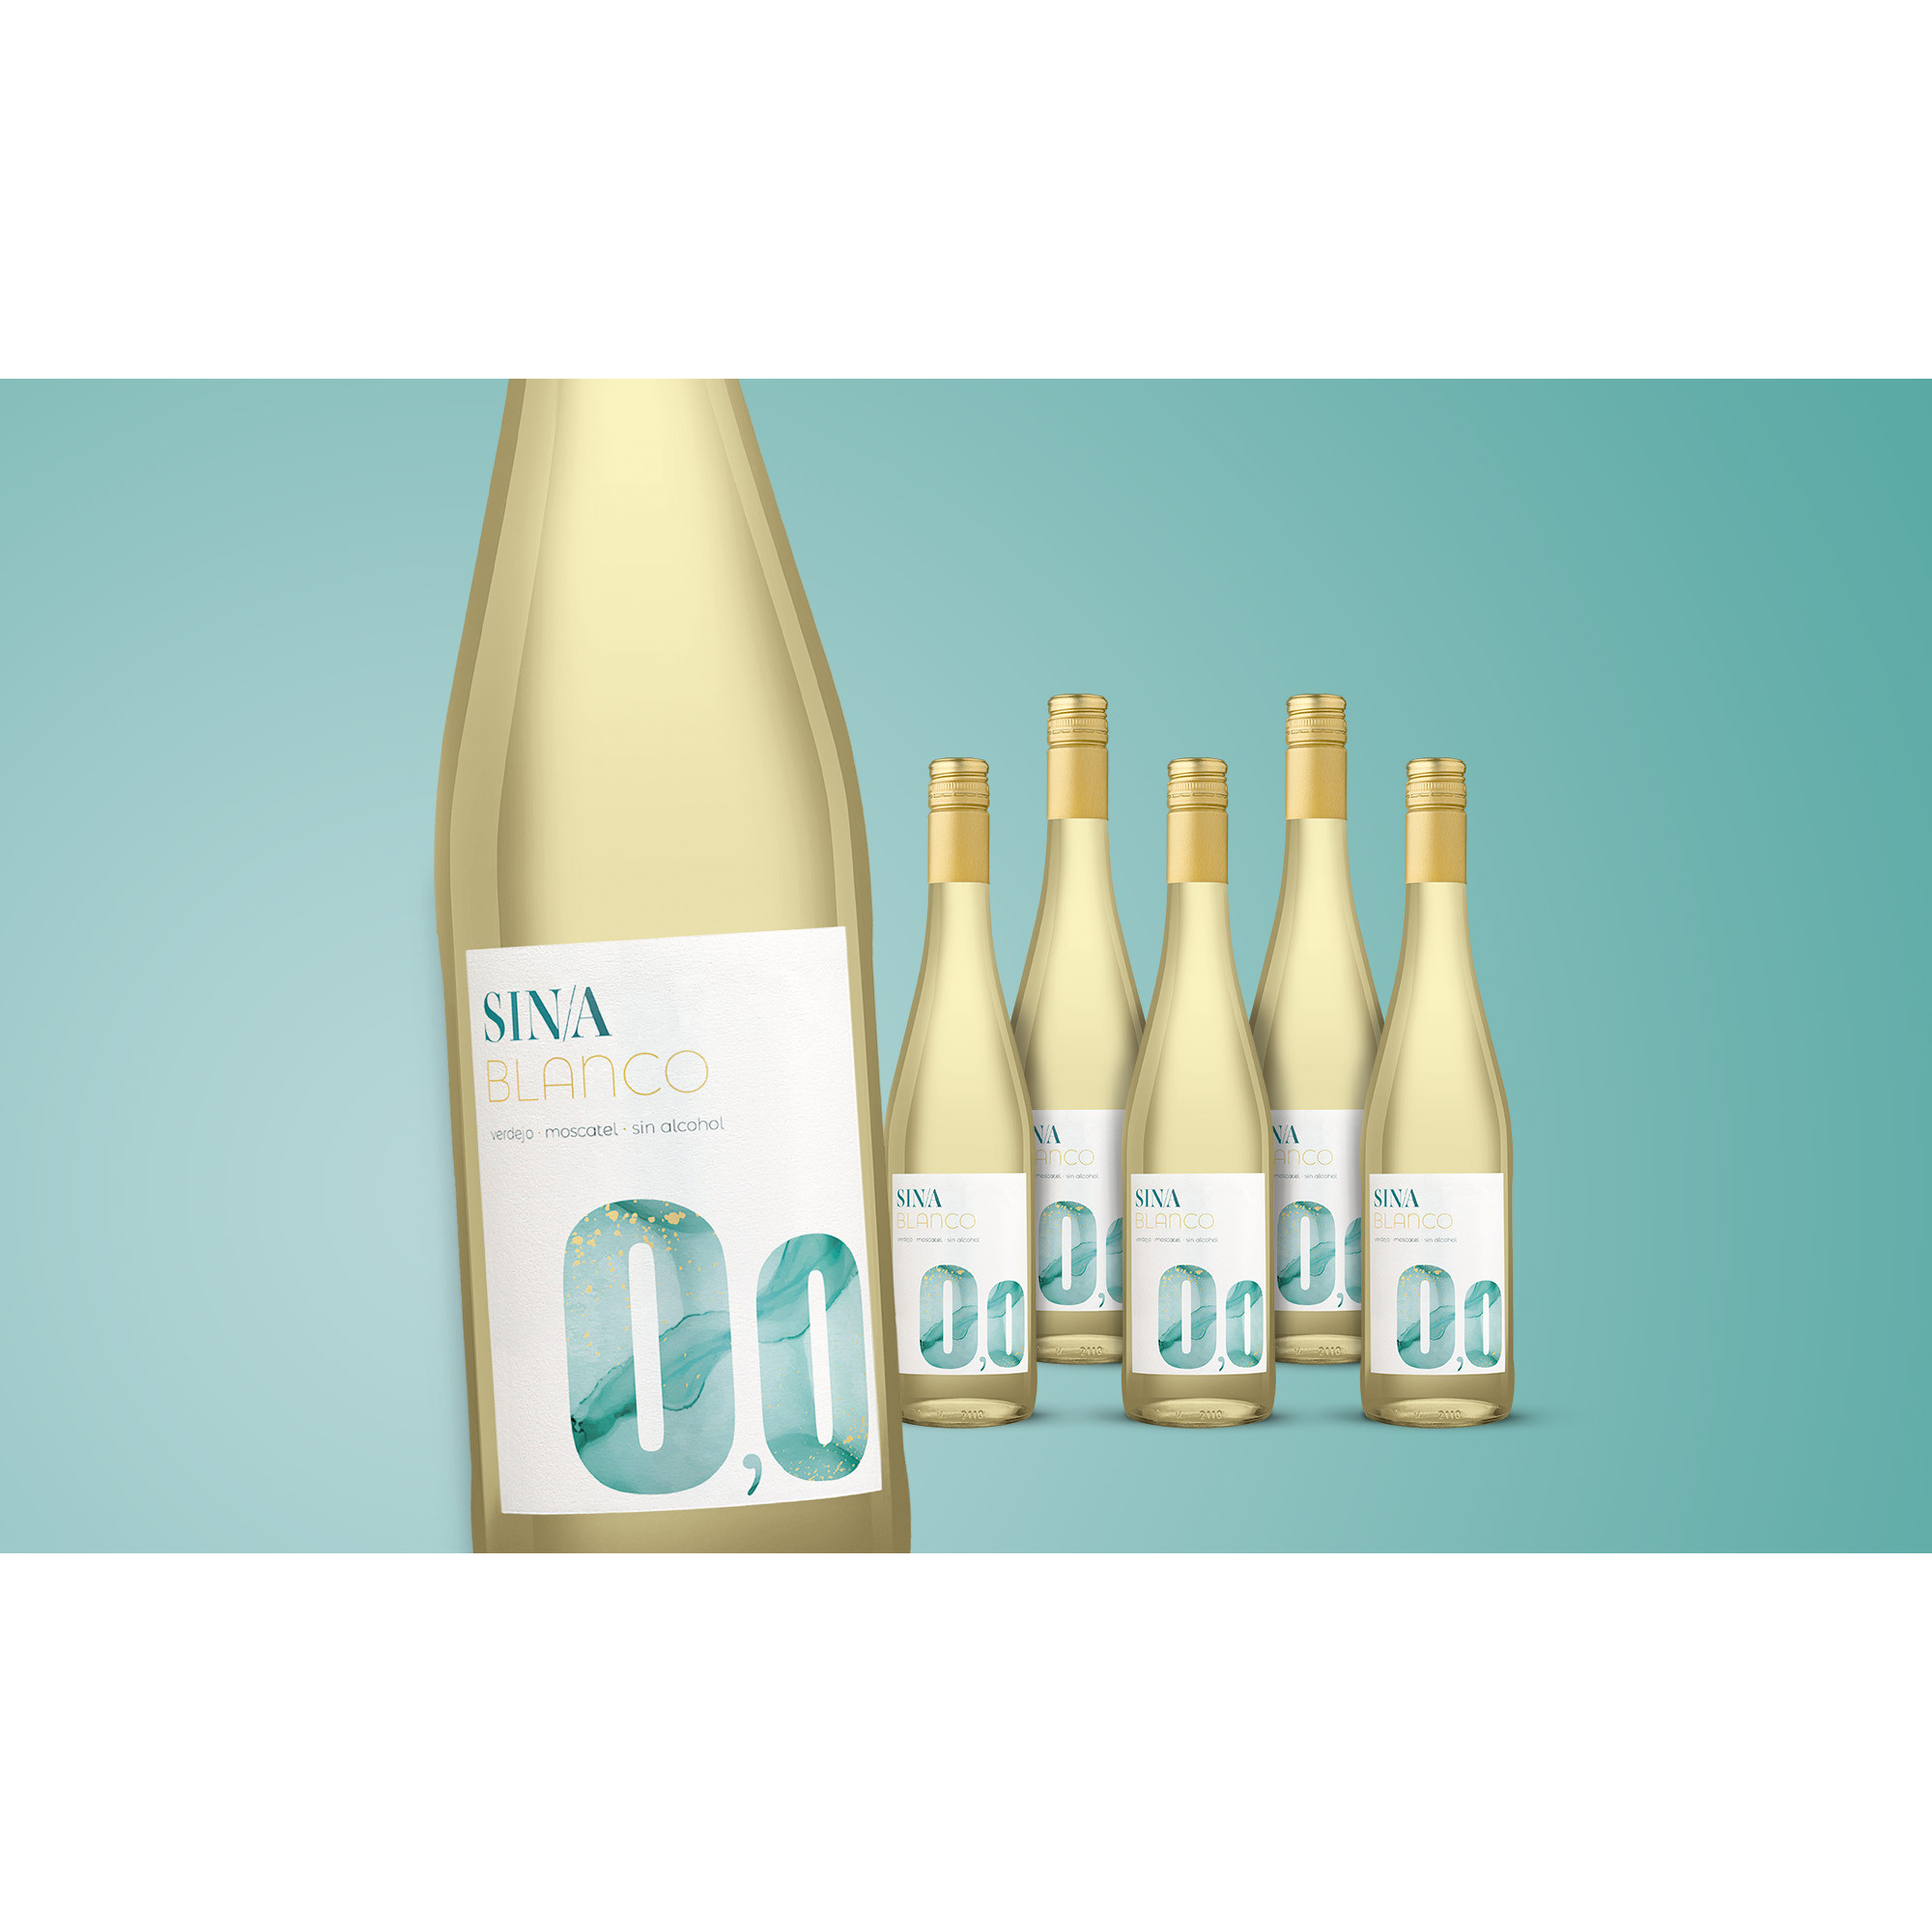 SIN/A 0,0 Blanco 2022  4.5L Weinpaket aus Spanien 37381 vinos DE